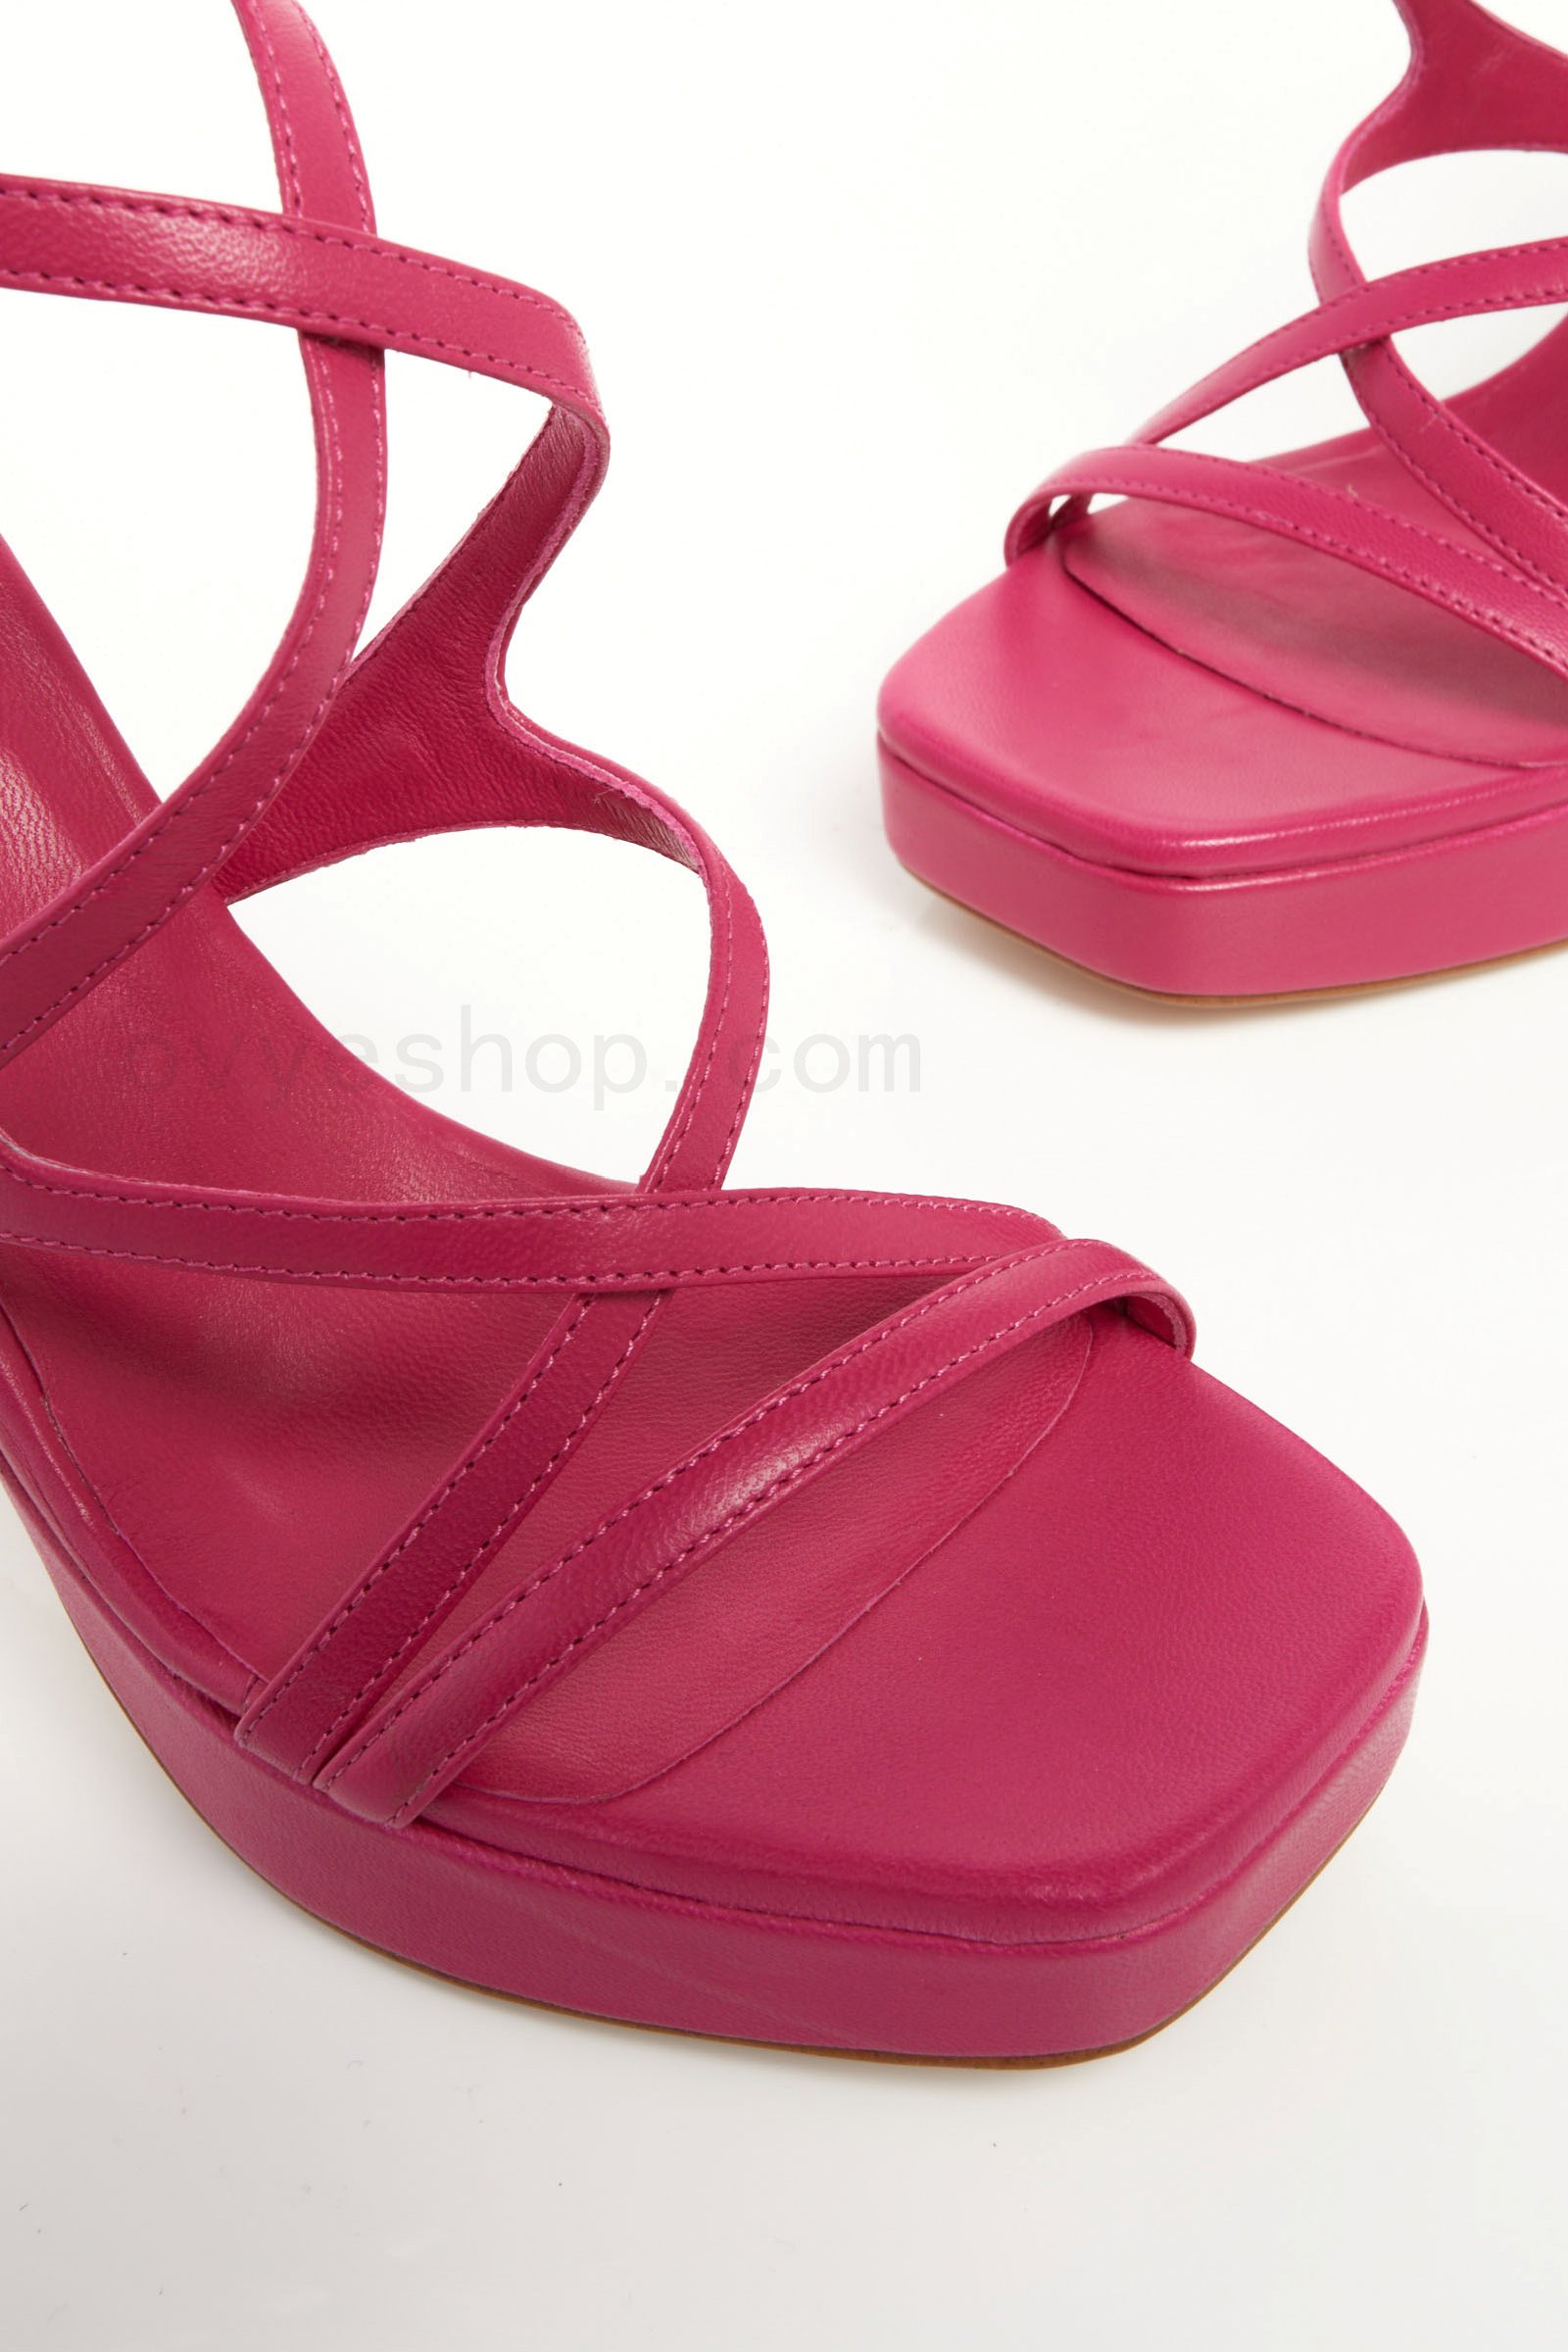 (image for) Leather Platform Sandals F0817885-0476 ovye scarpe